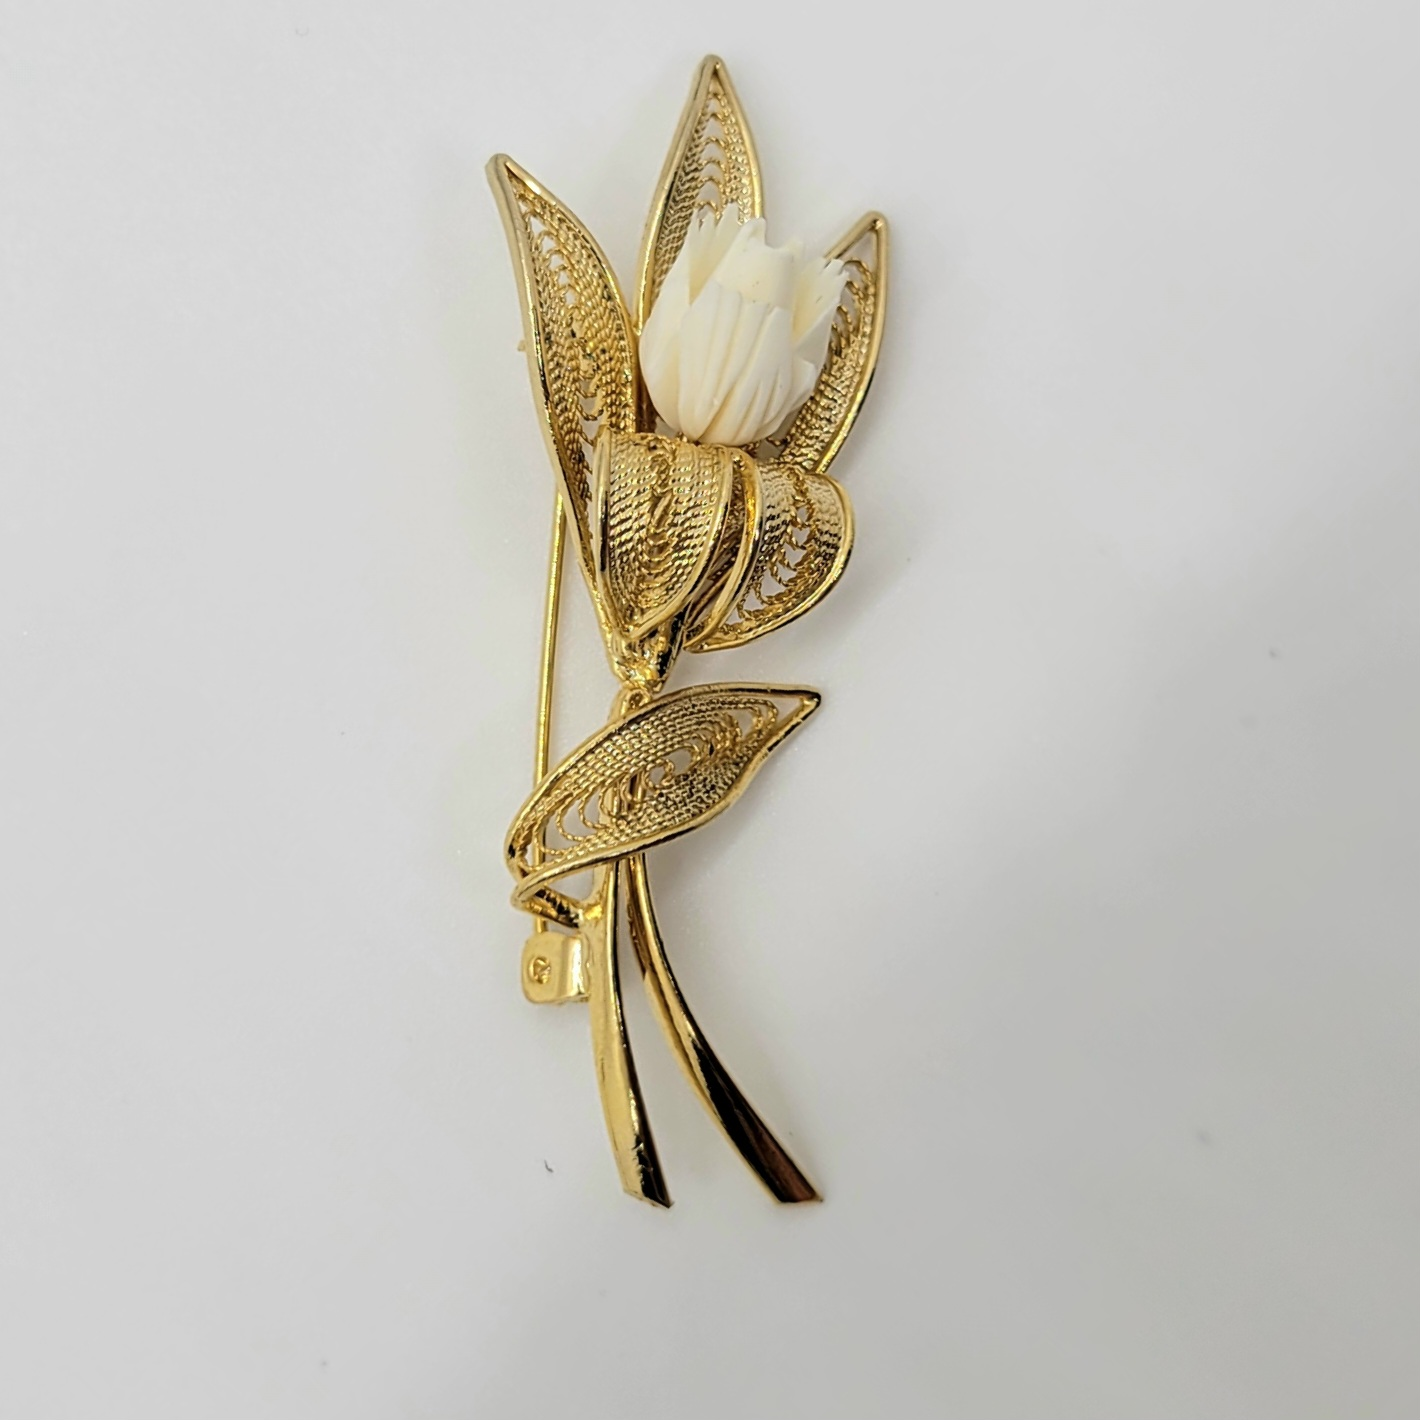 Vintage Floral Brooch with Ivory Carved Flower Gold Tone Filigree